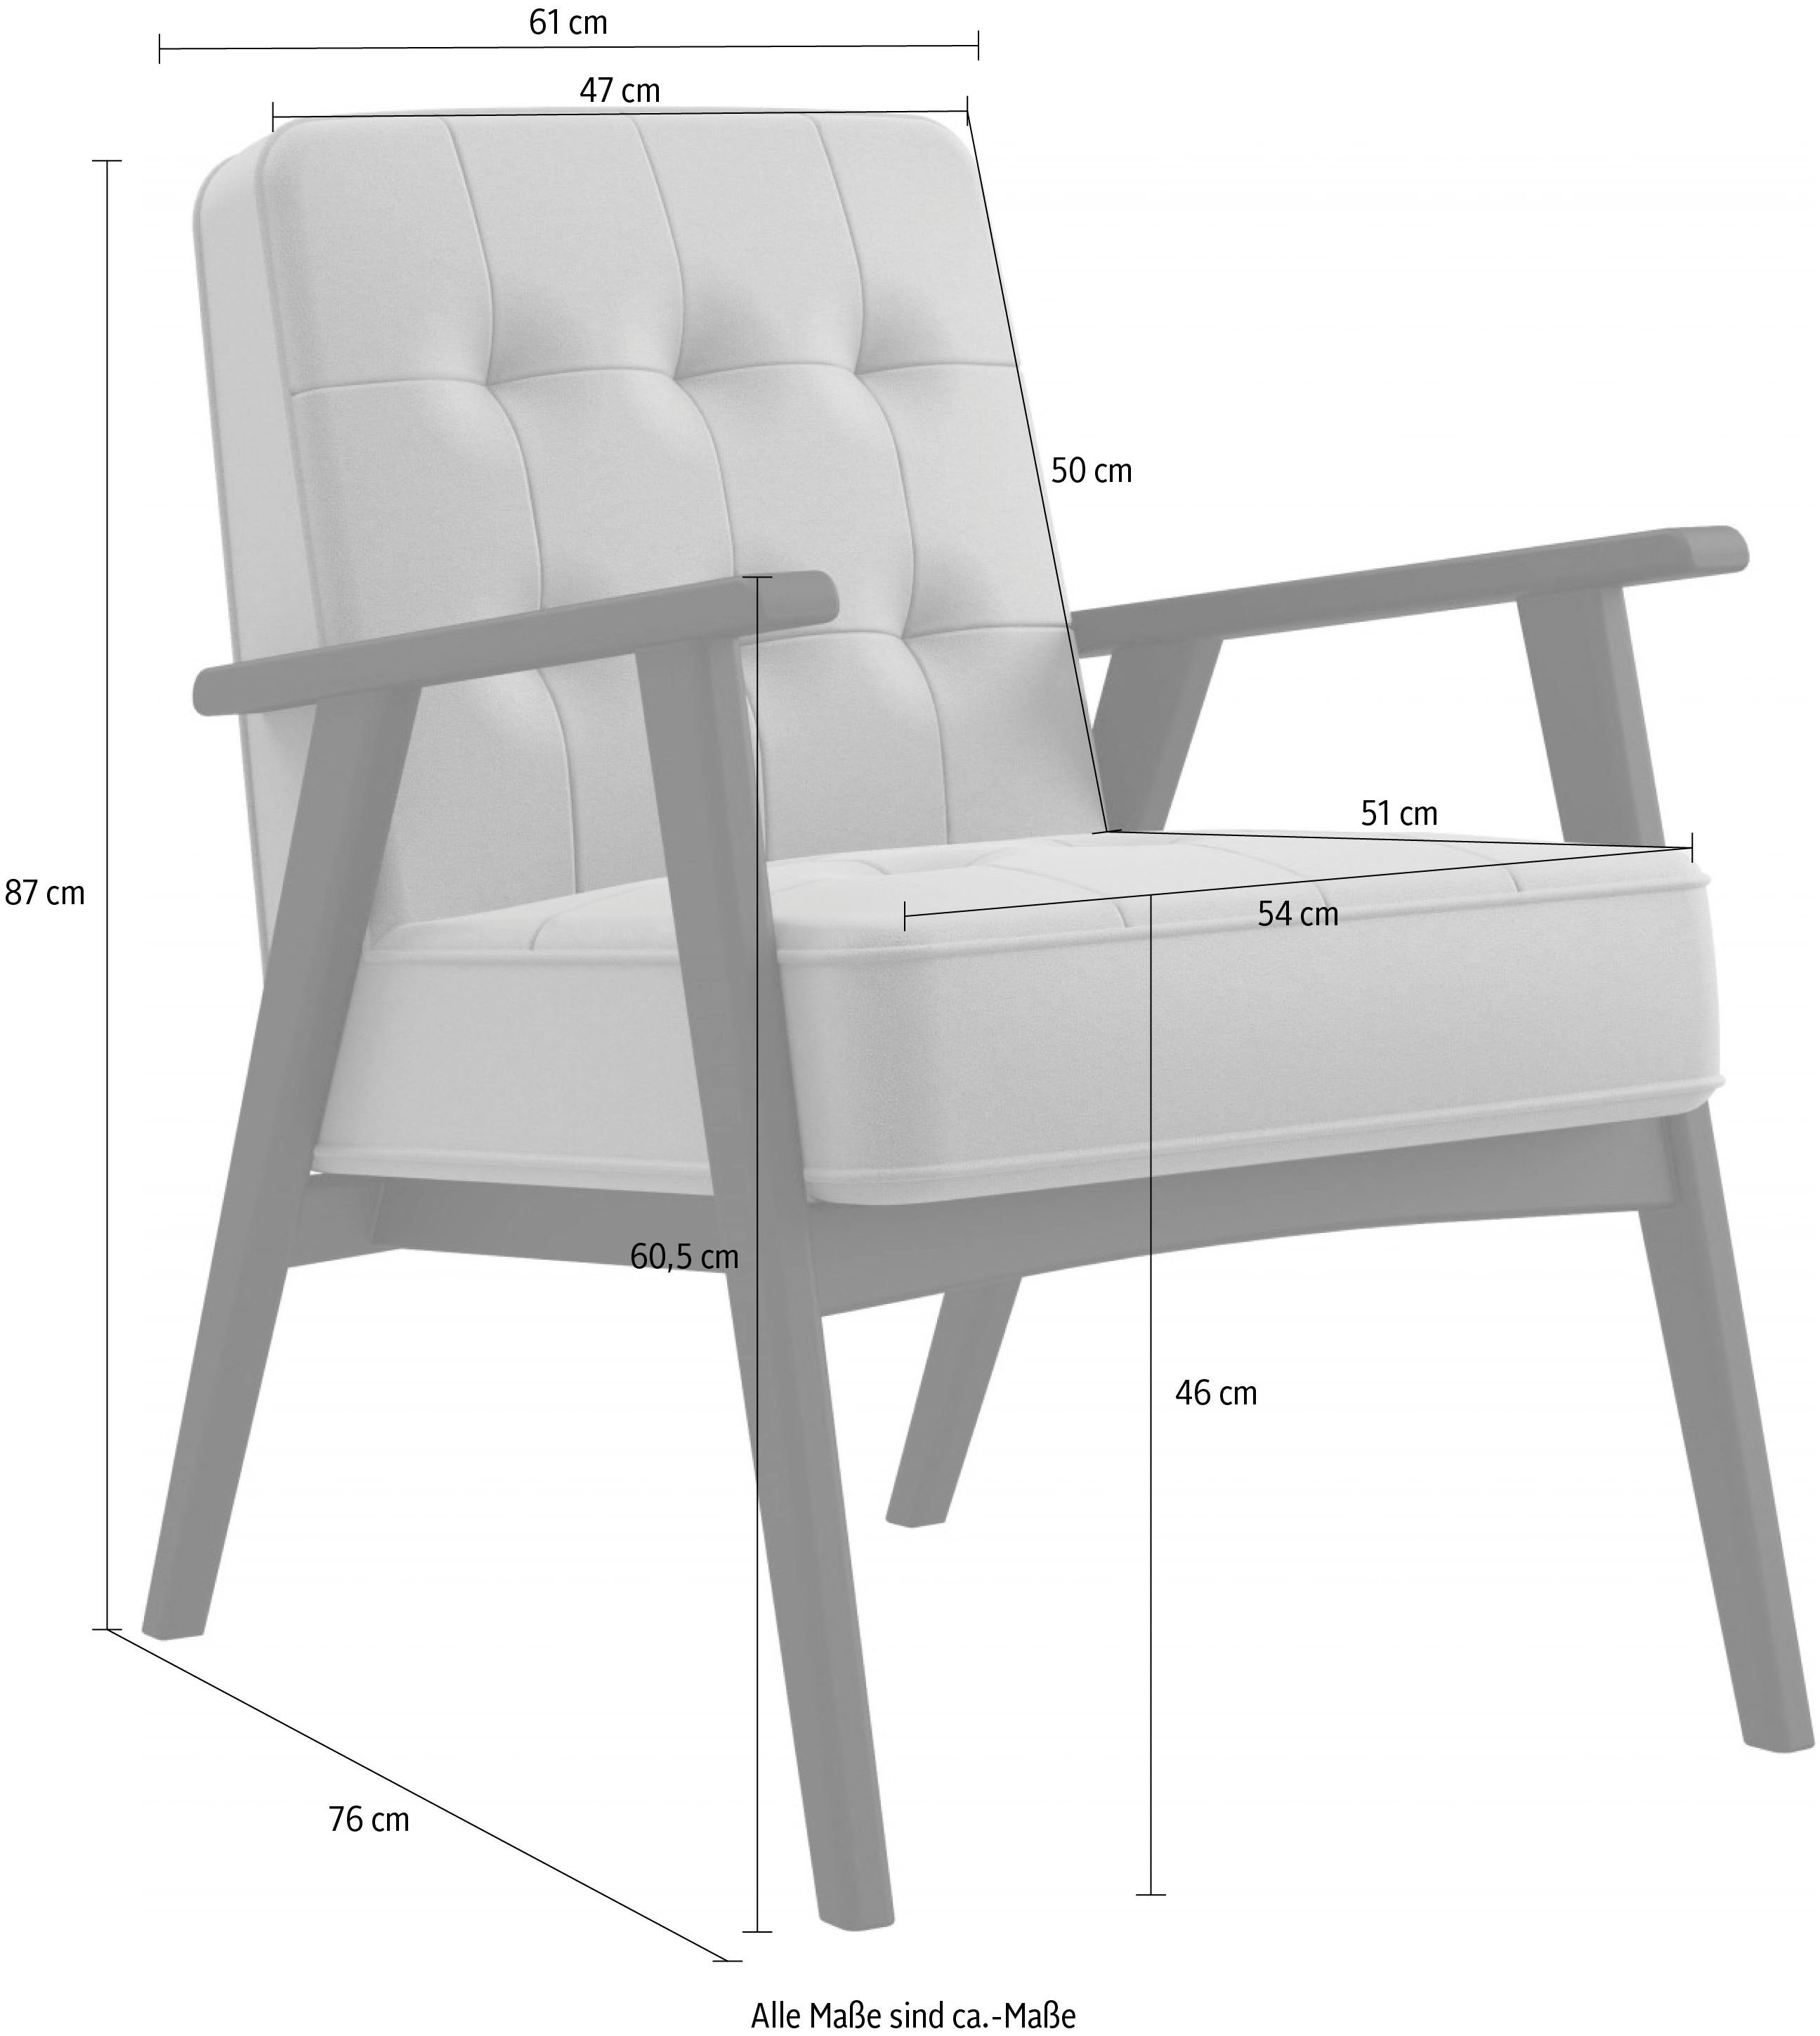 andas Sessel in Massivholz, Lederoptik, Sitzkomfort Alvared, aus mit Black Jet Design Wellenunterfederung für edles hohen